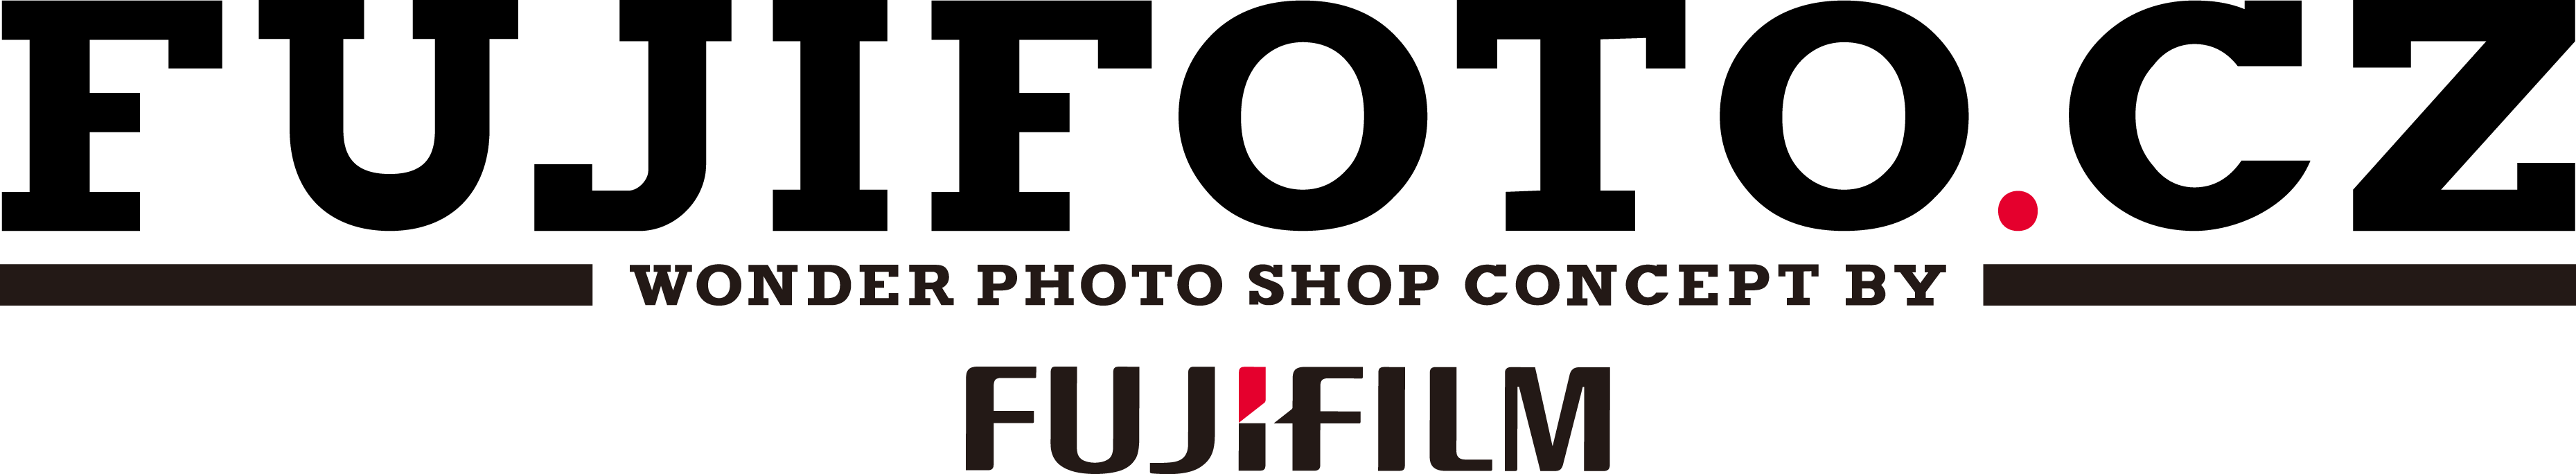 fujifoto logo